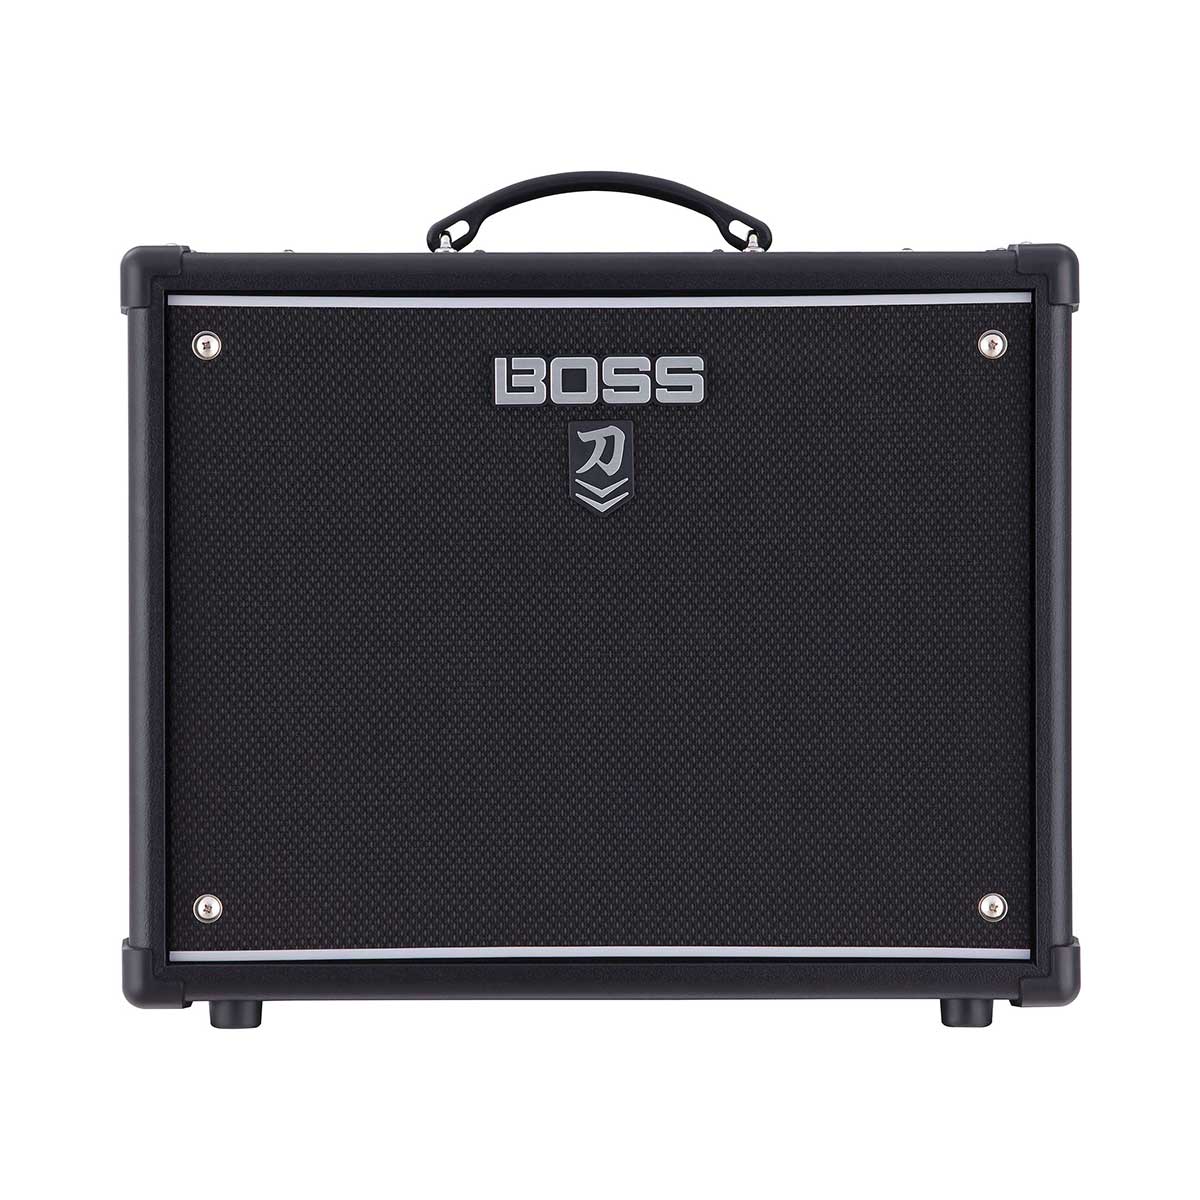 Boss KATANA-50 MkII EX Guitar Amplifier 50W 1x12